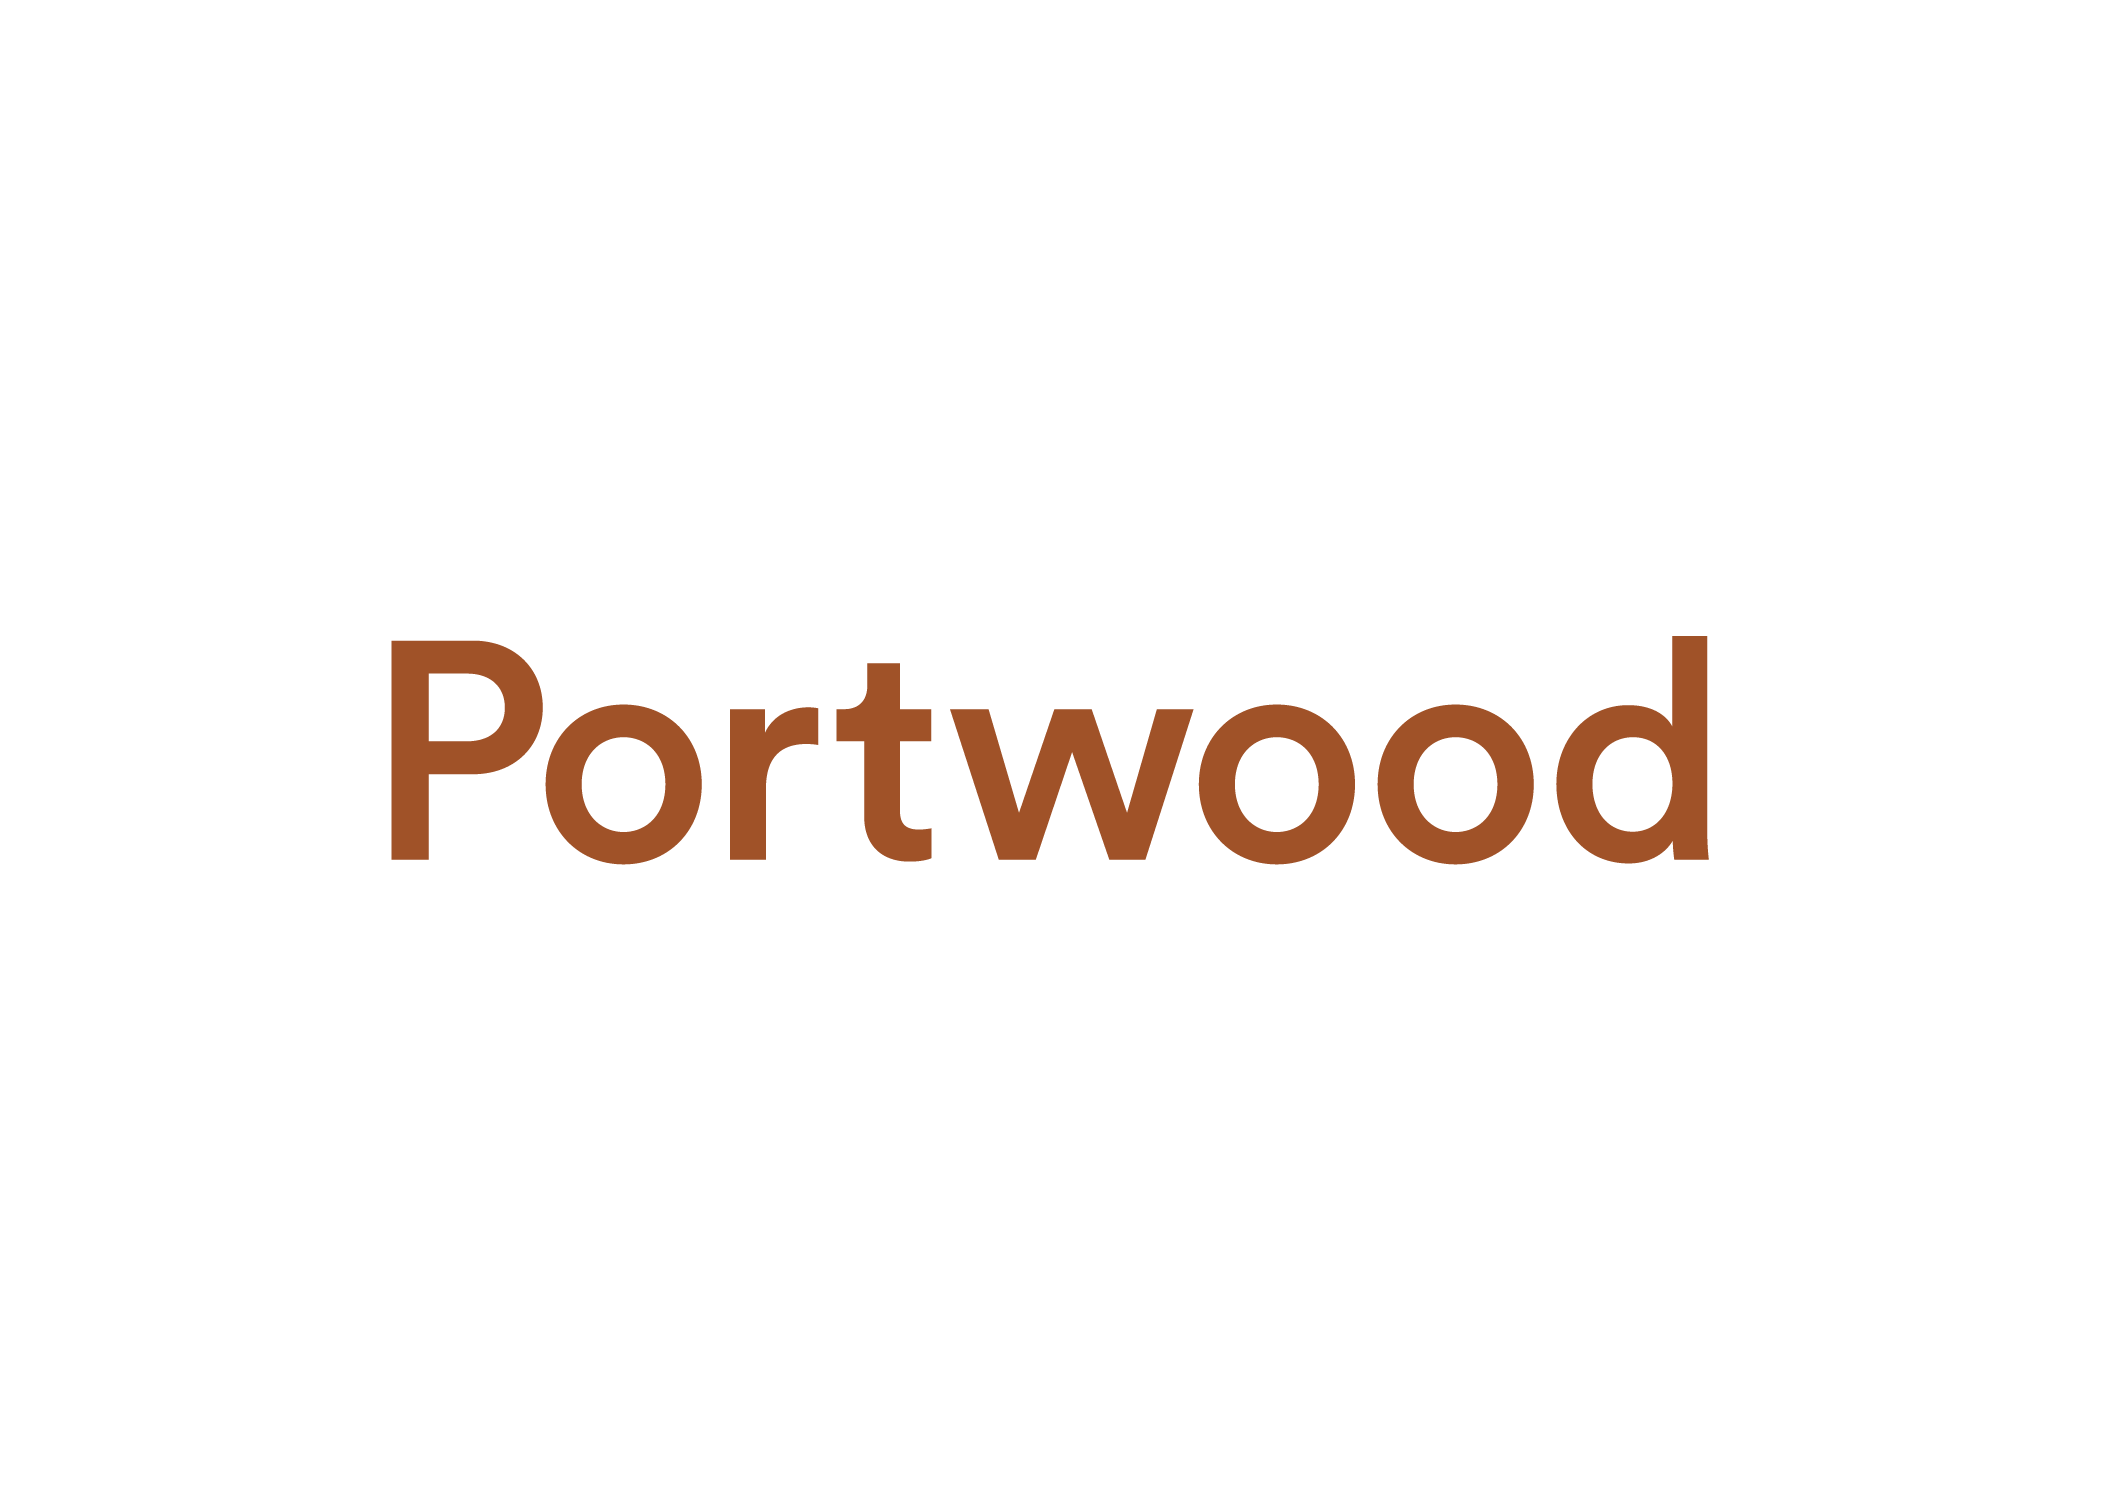 Portwood